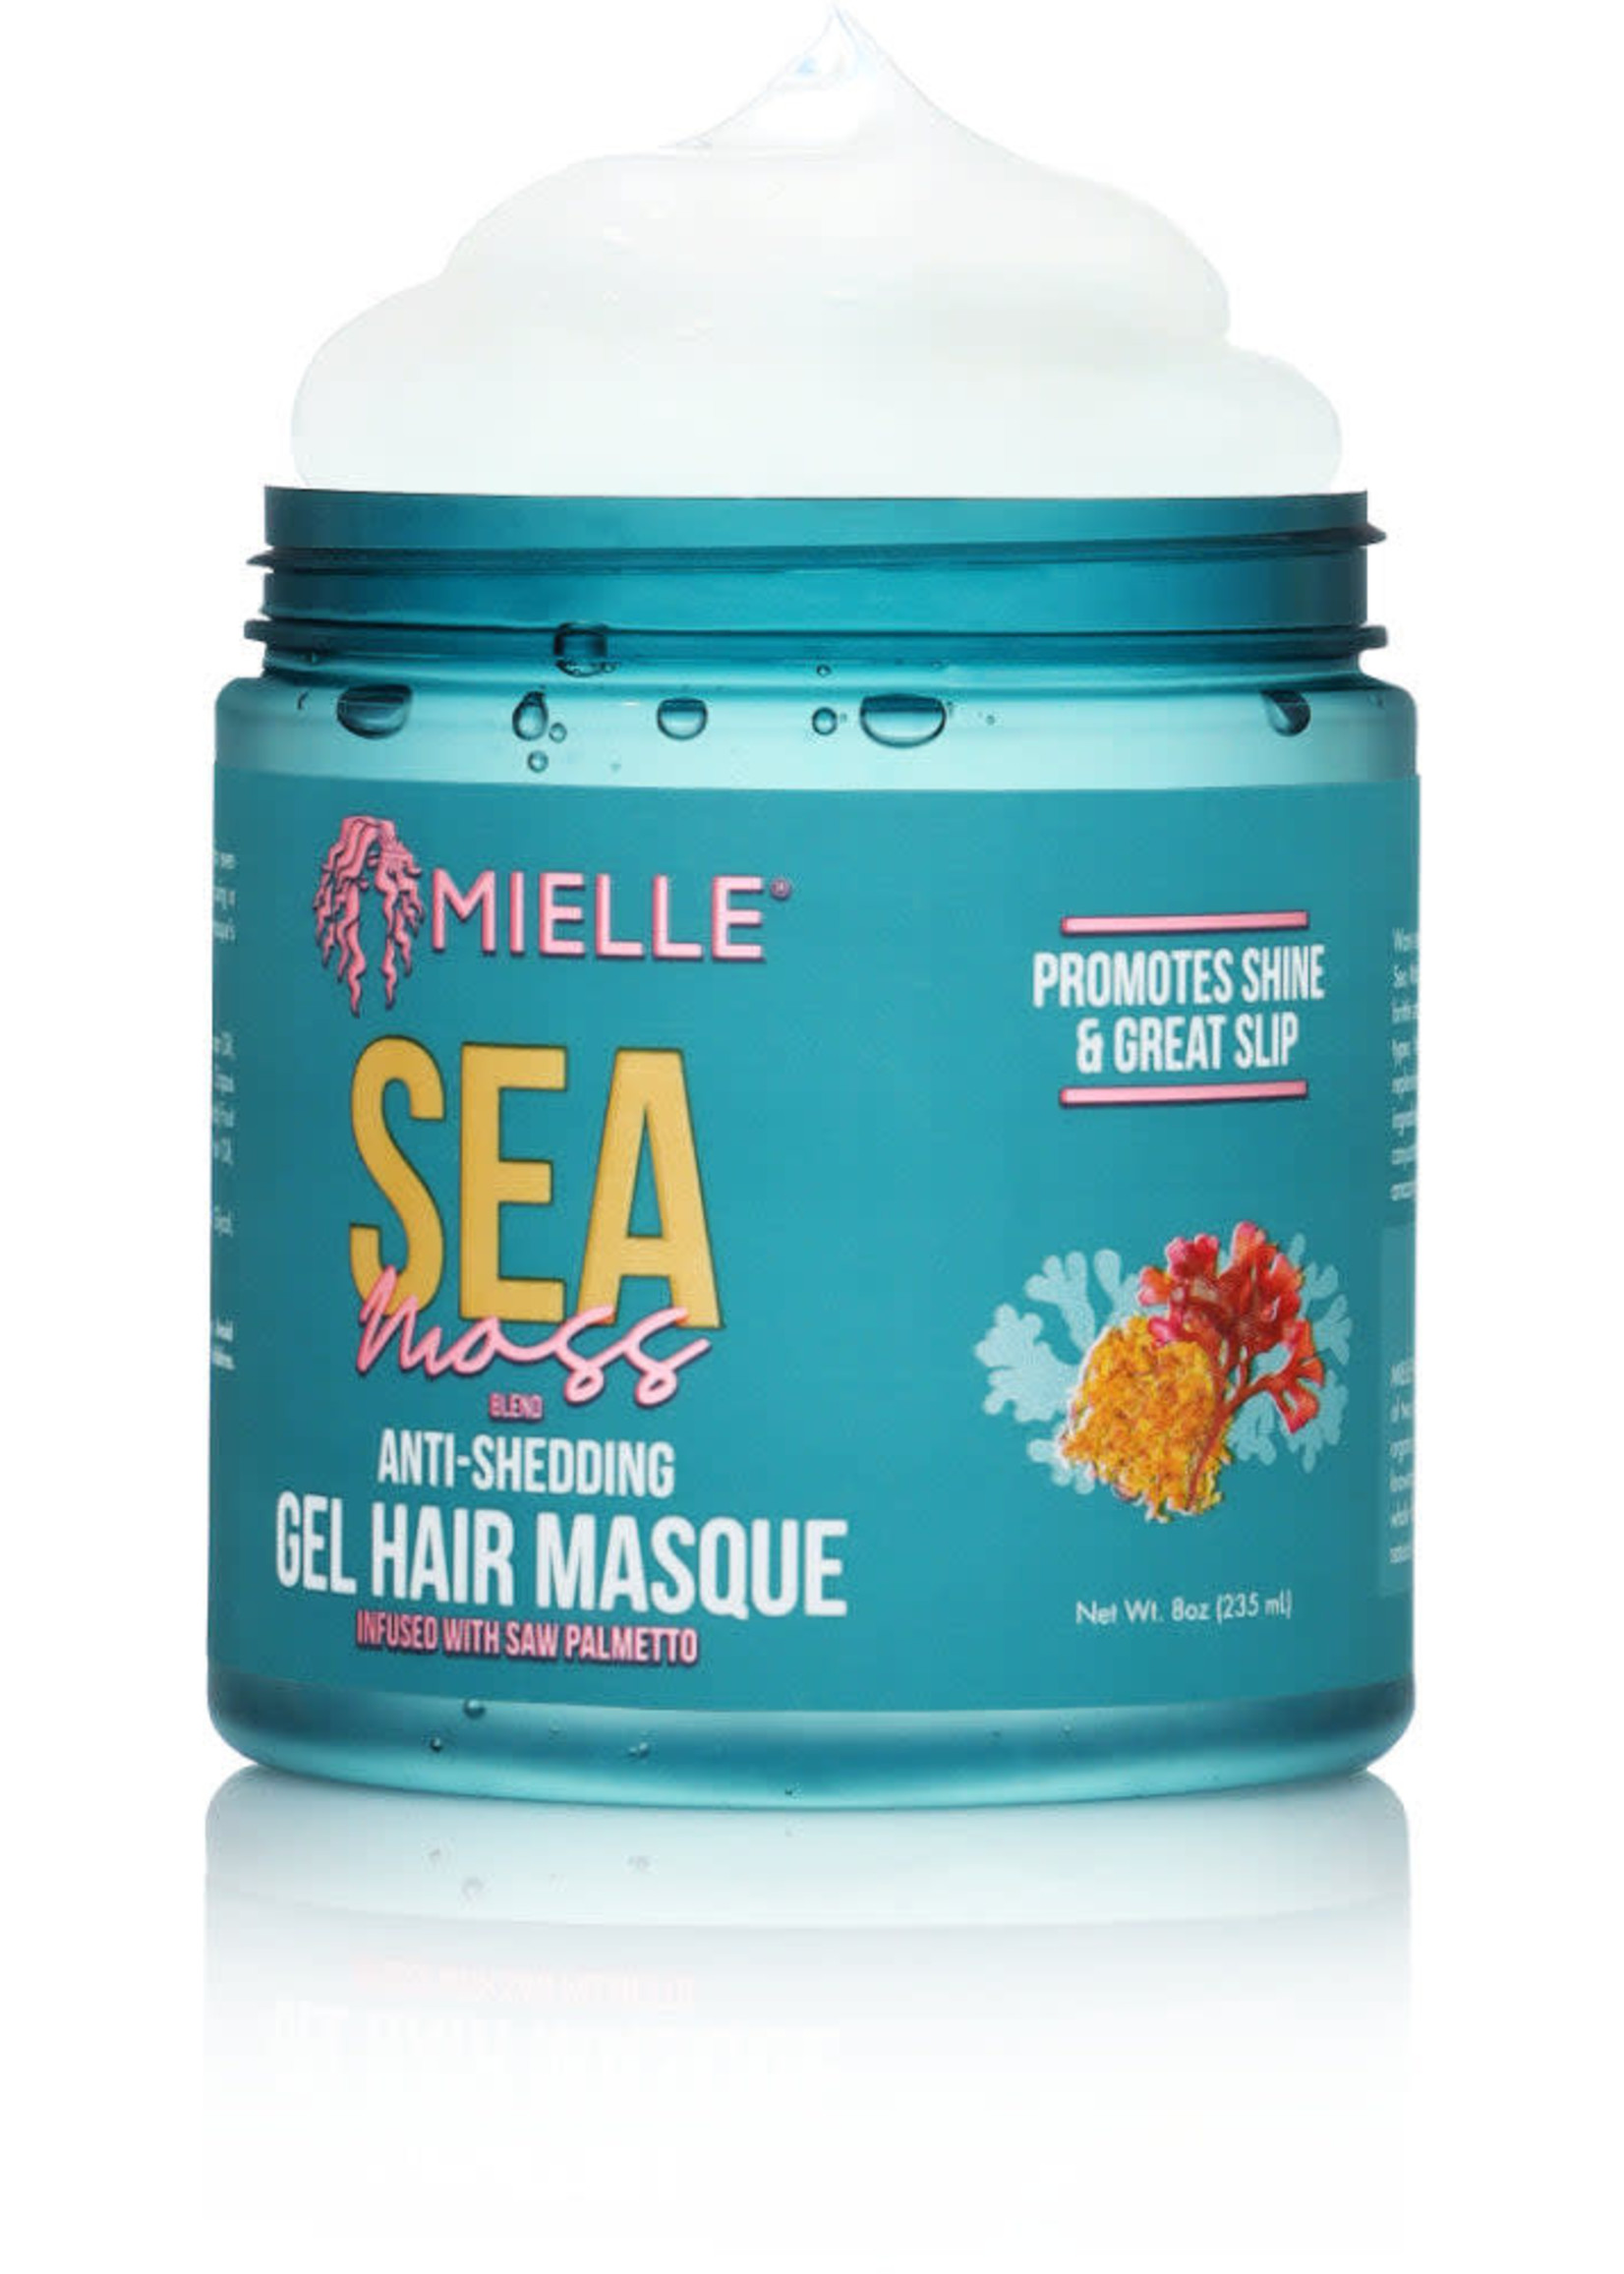 Mielle Organics Sea Moss Anti-Shedding Gel Hair Masque